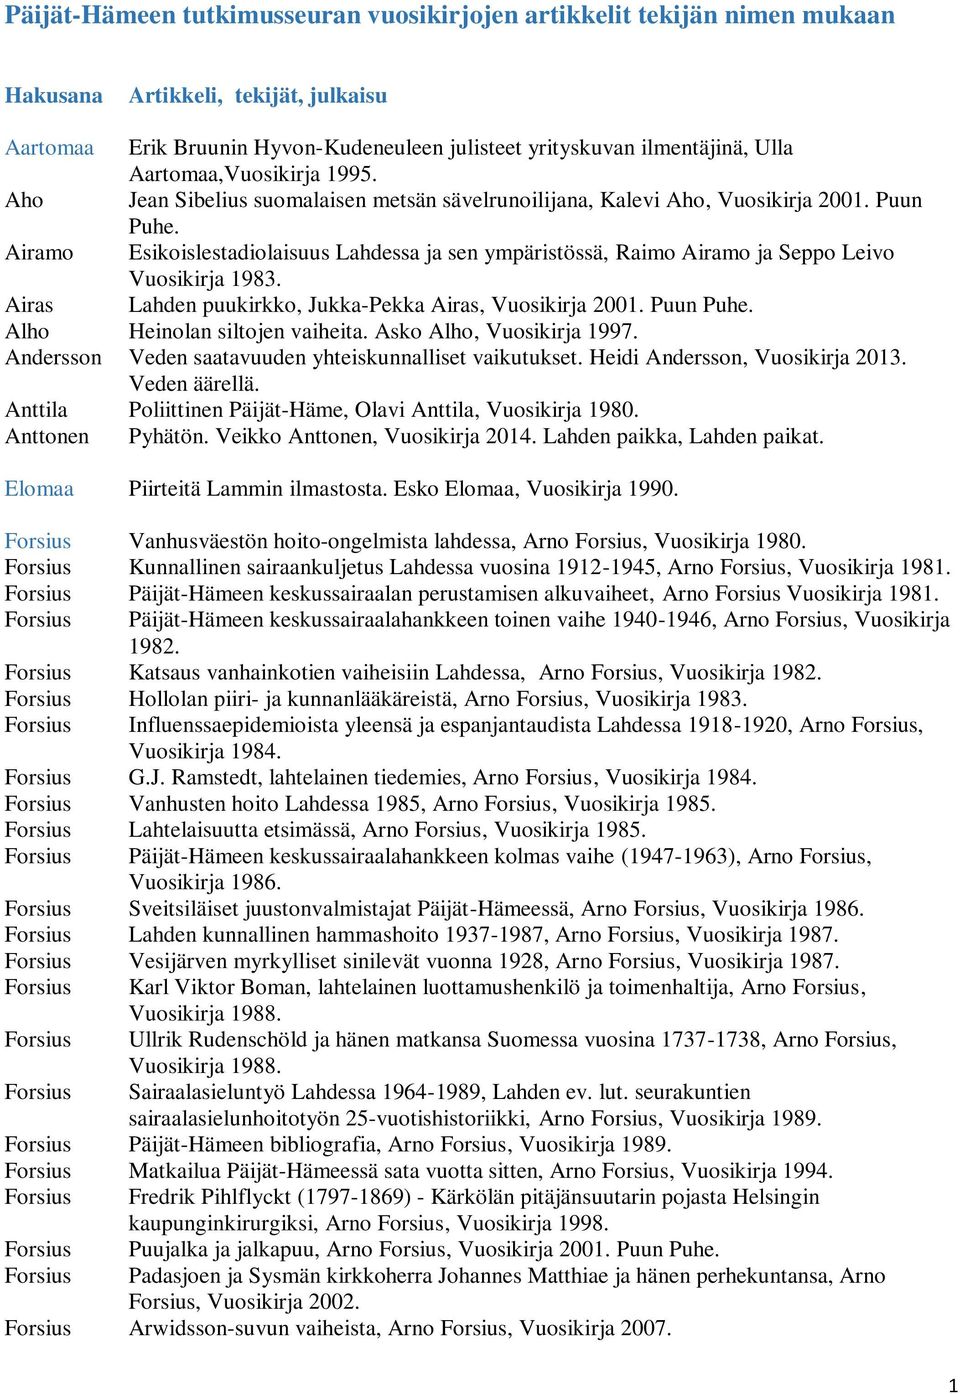 Airamo Esikoislestadiolaisuus Lahdessa ja sen ympäristössä, Raimo Airamo ja Seppo Leivo Vuosikirja 1983. Airas Lahden puukirkko, Jukka-Pekka Airas, Vuosikirja 2001. Puun Puhe.